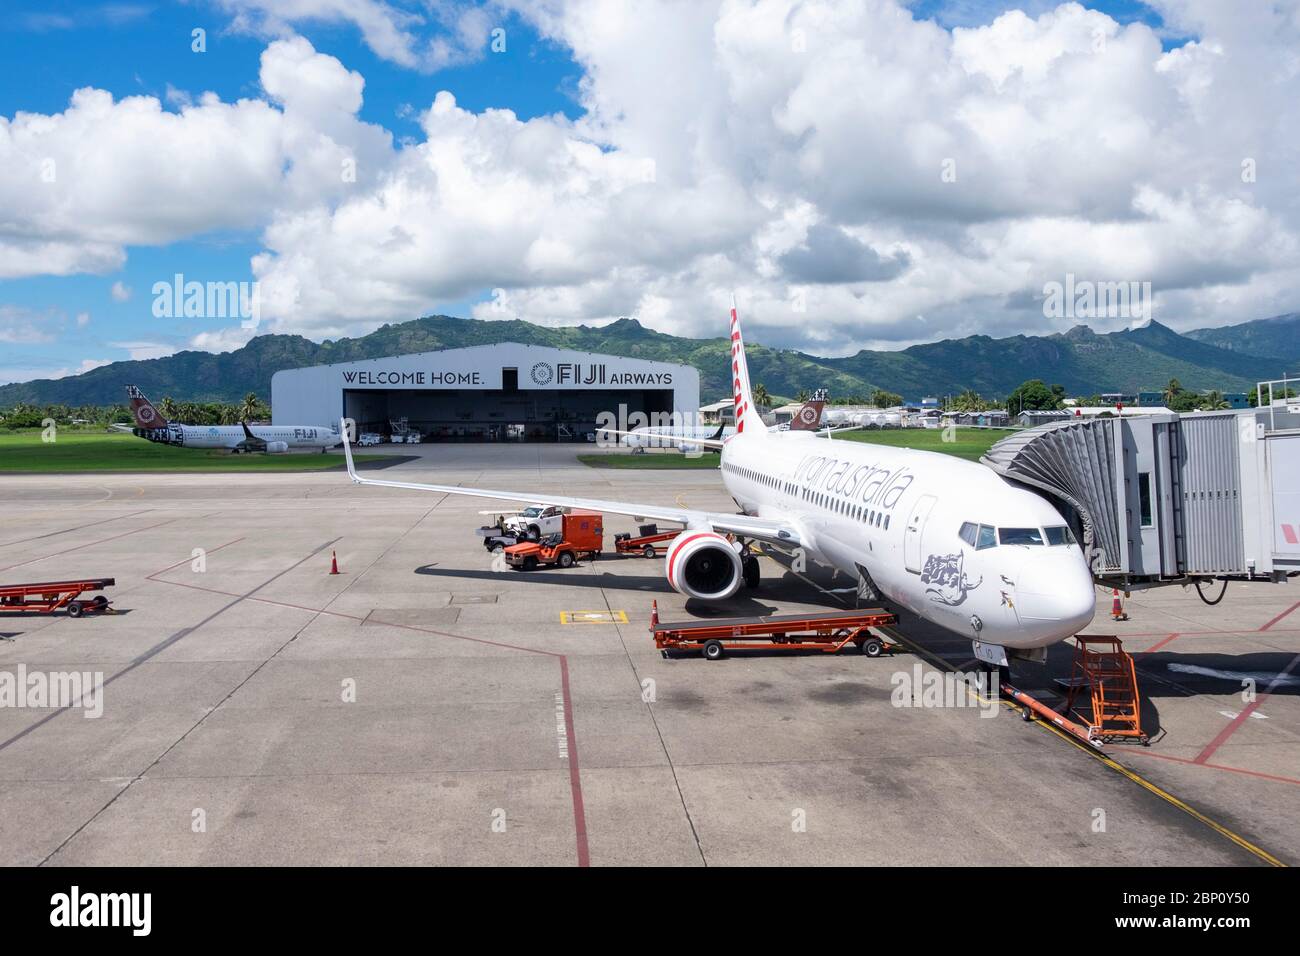 Aircraft parked at Nadi International Airport, Viti Levu Island, Fiji